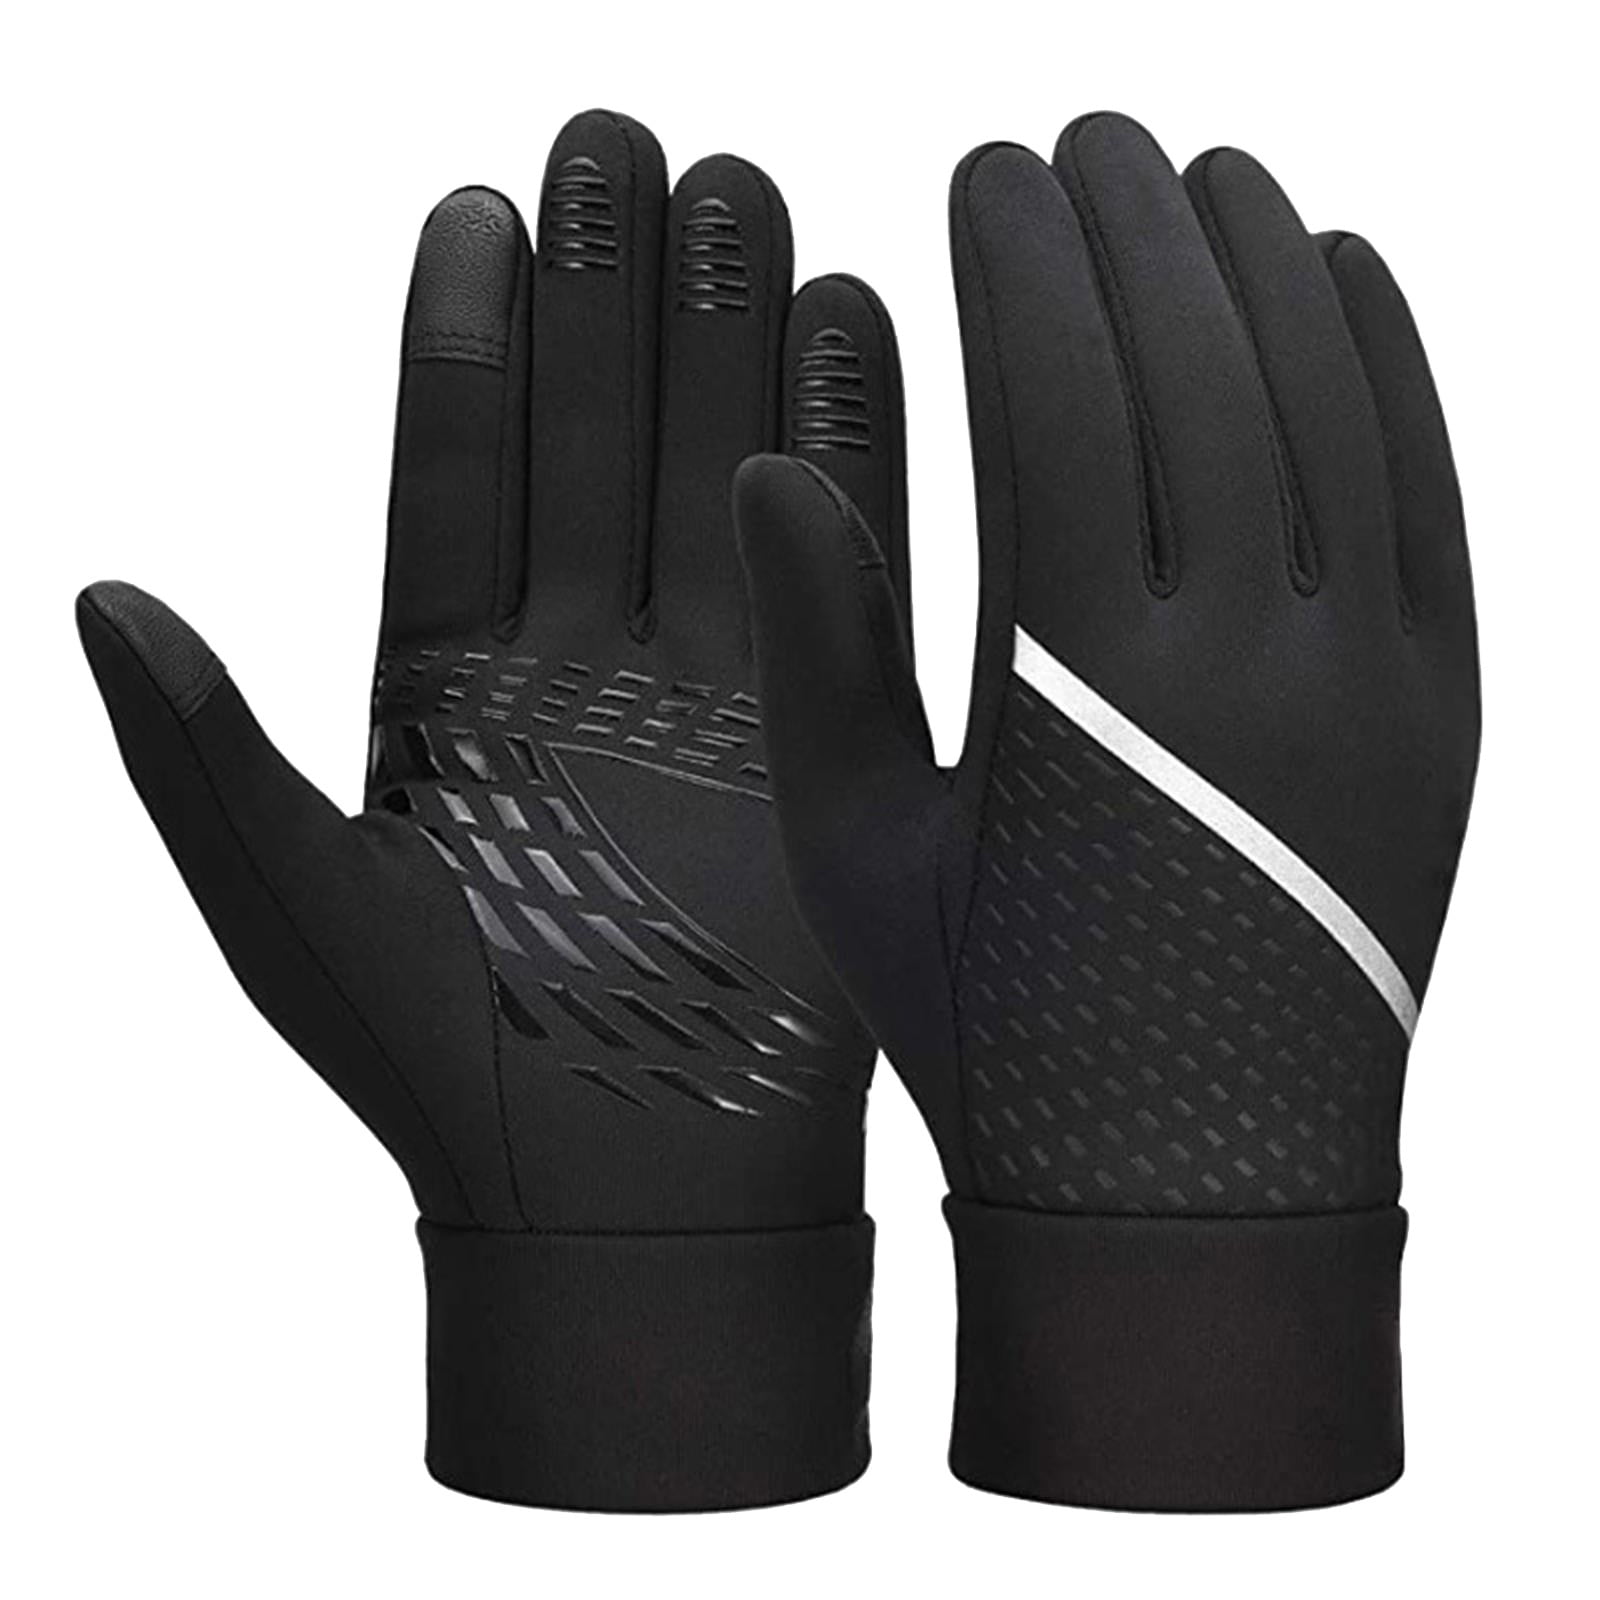 Gloves for bike windproof running gloves for touch screen non slip 